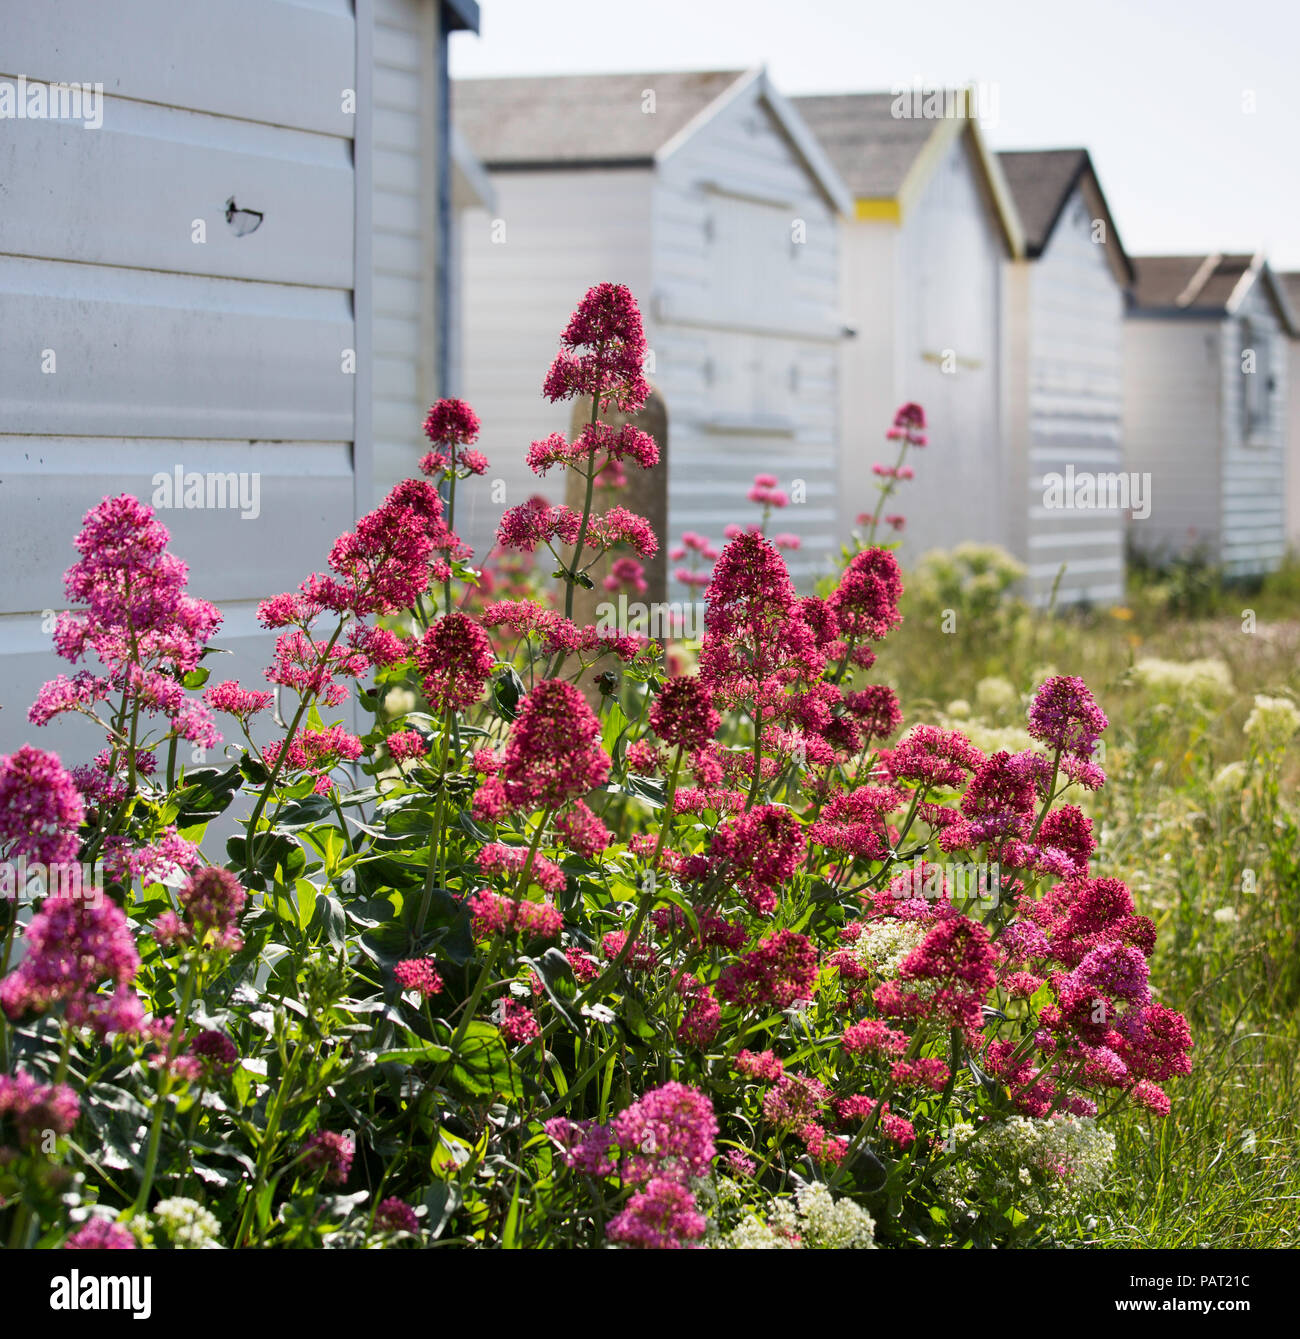 Rote Baldrian wächst wild am Strand Hütten von Shoreham von Meer, West Sussex, UK. Stockfoto